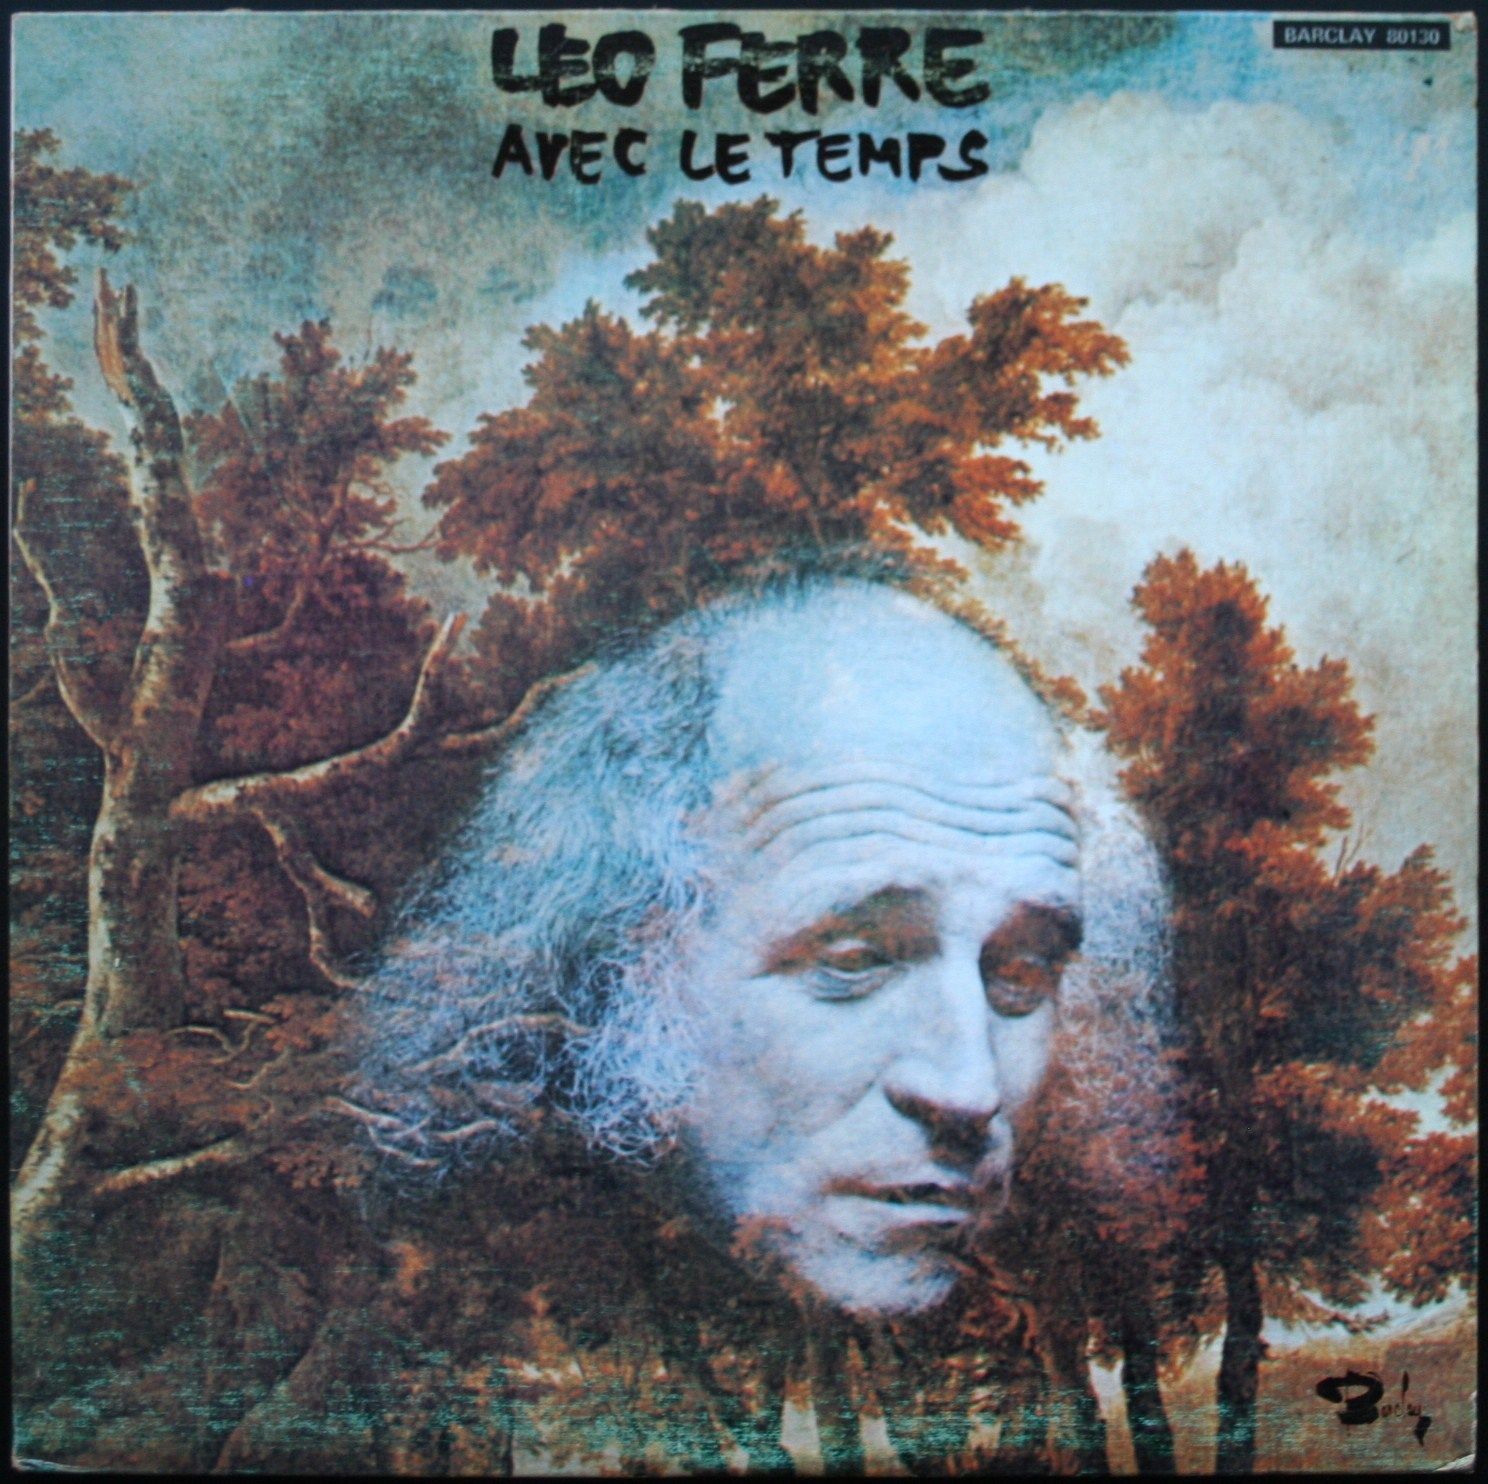 Léo Ferré - Les chansons d’amour de Léo Ferré, Barclay 80 130